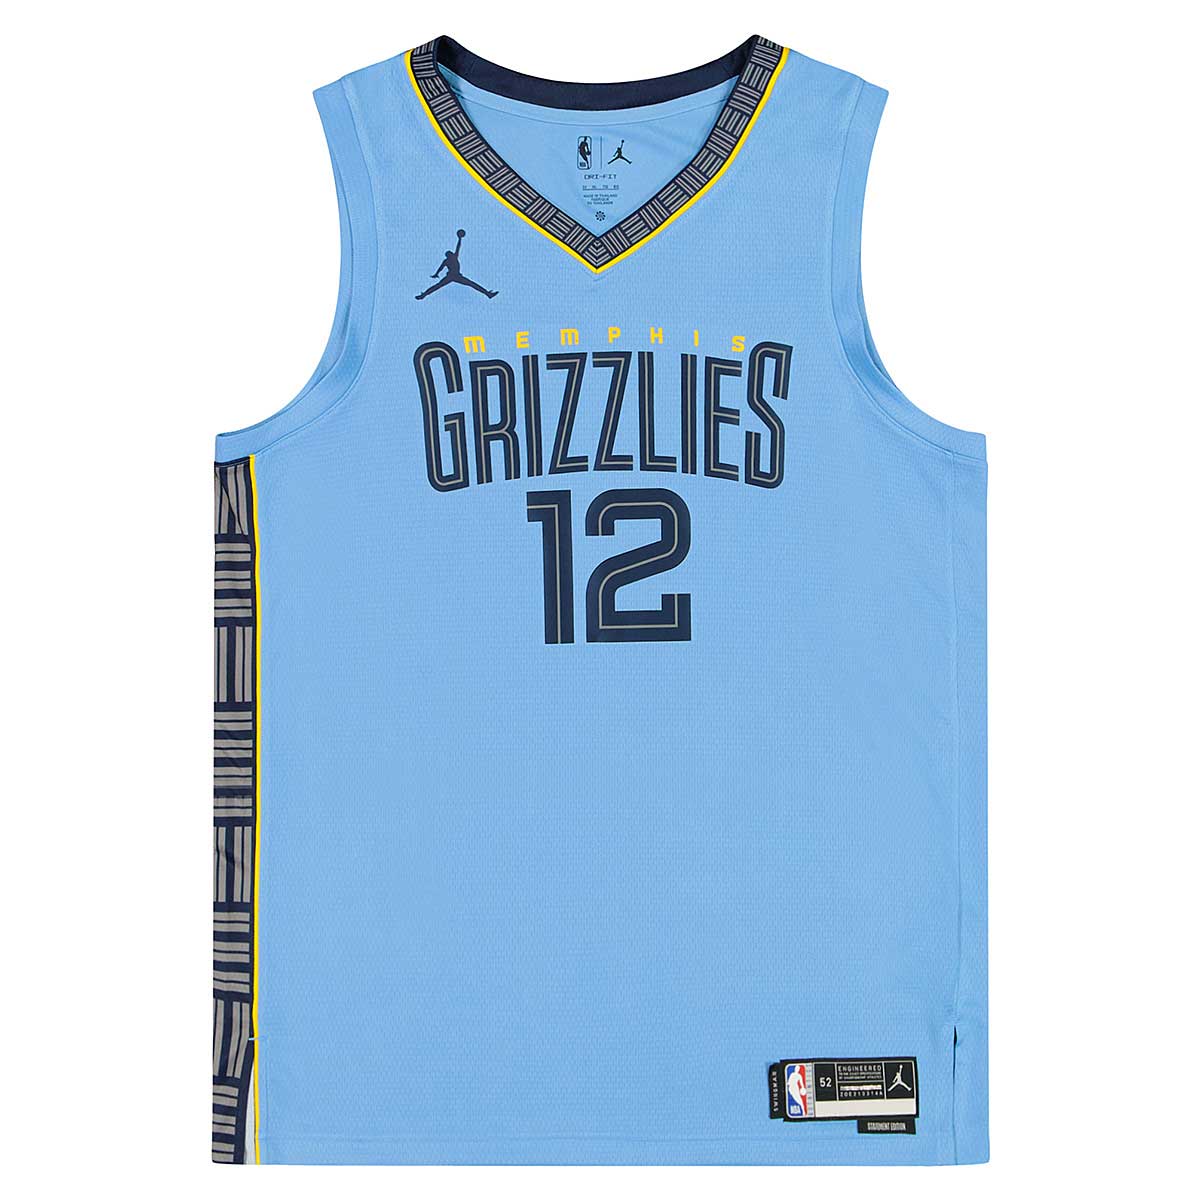 Memphis Grizzlies Home Uniform  Memphis grizzlies, Memphis grizzlies  basketball, Basketball uniforms